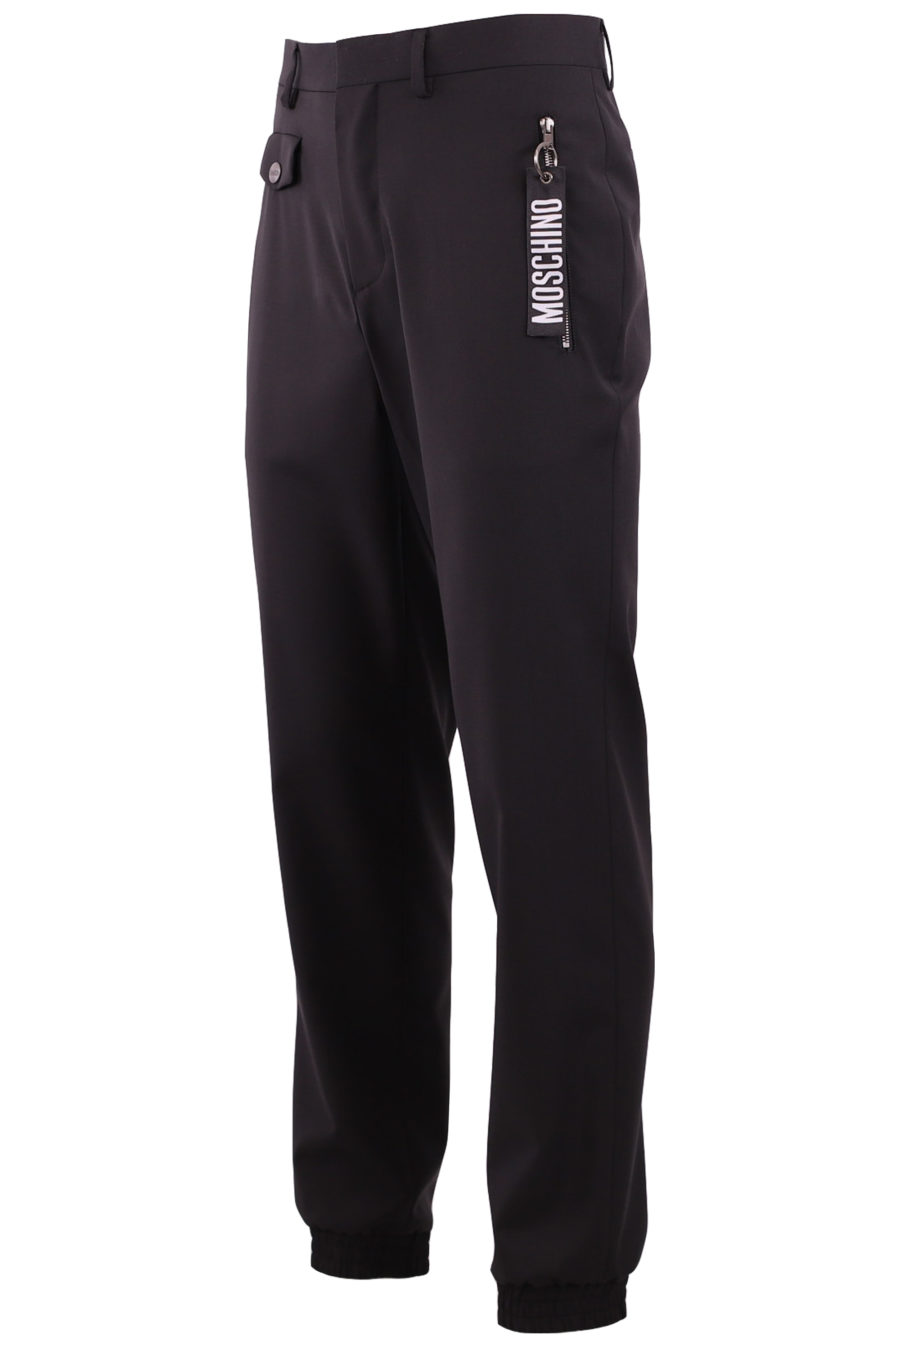 Pantalón jogger de color negro con logo - 65a1964e3e2acb60108463fcb02e47e9be0ac1fd